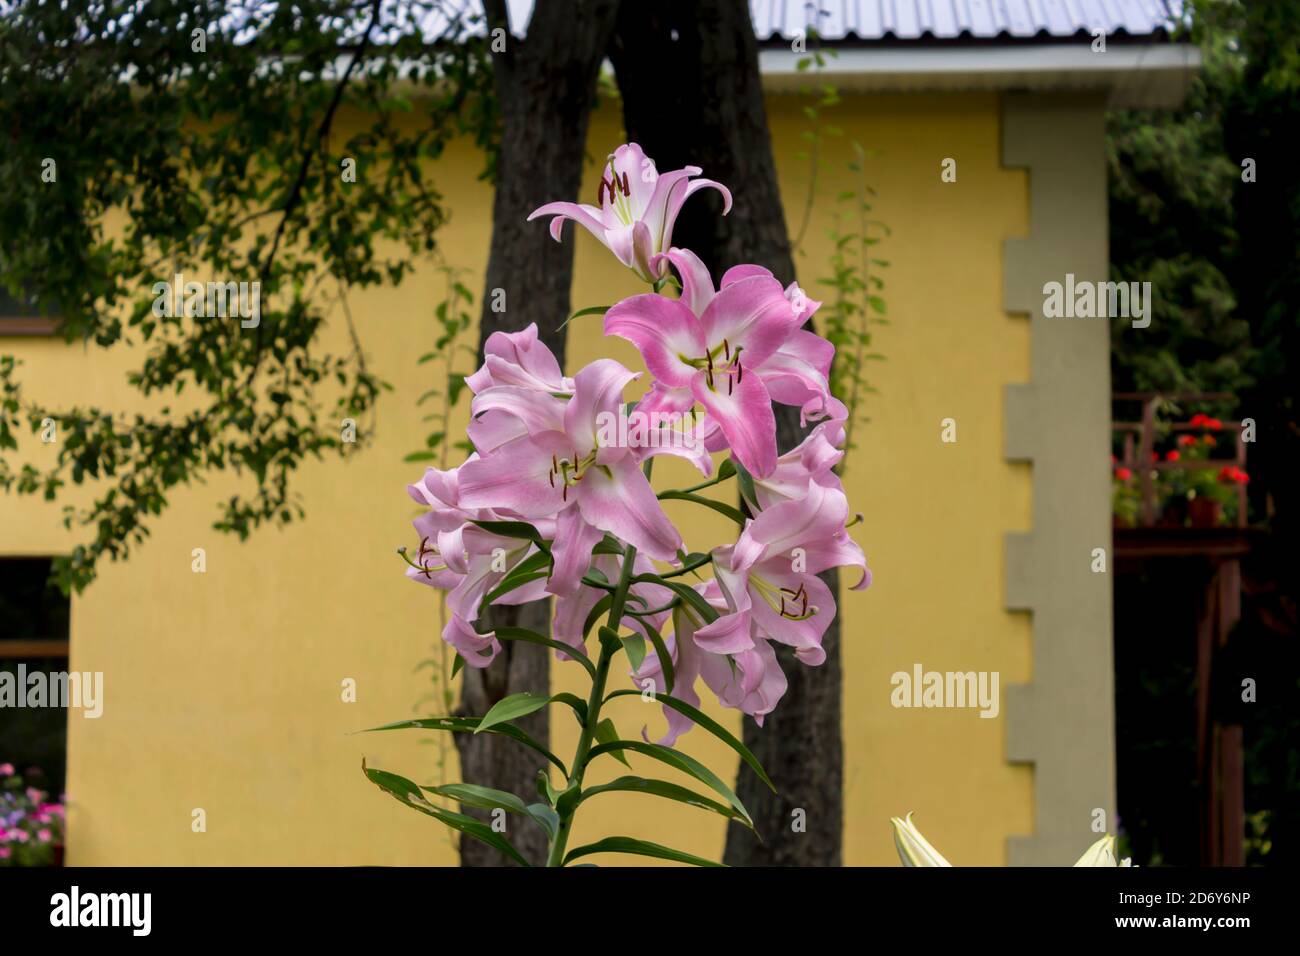 Inflorescence des lys violets ( Liliaceae) sur le fond des arbres et d'un mur jaune. Gros plan . Jardin botanique au milieu de l'été. Banque D'Images